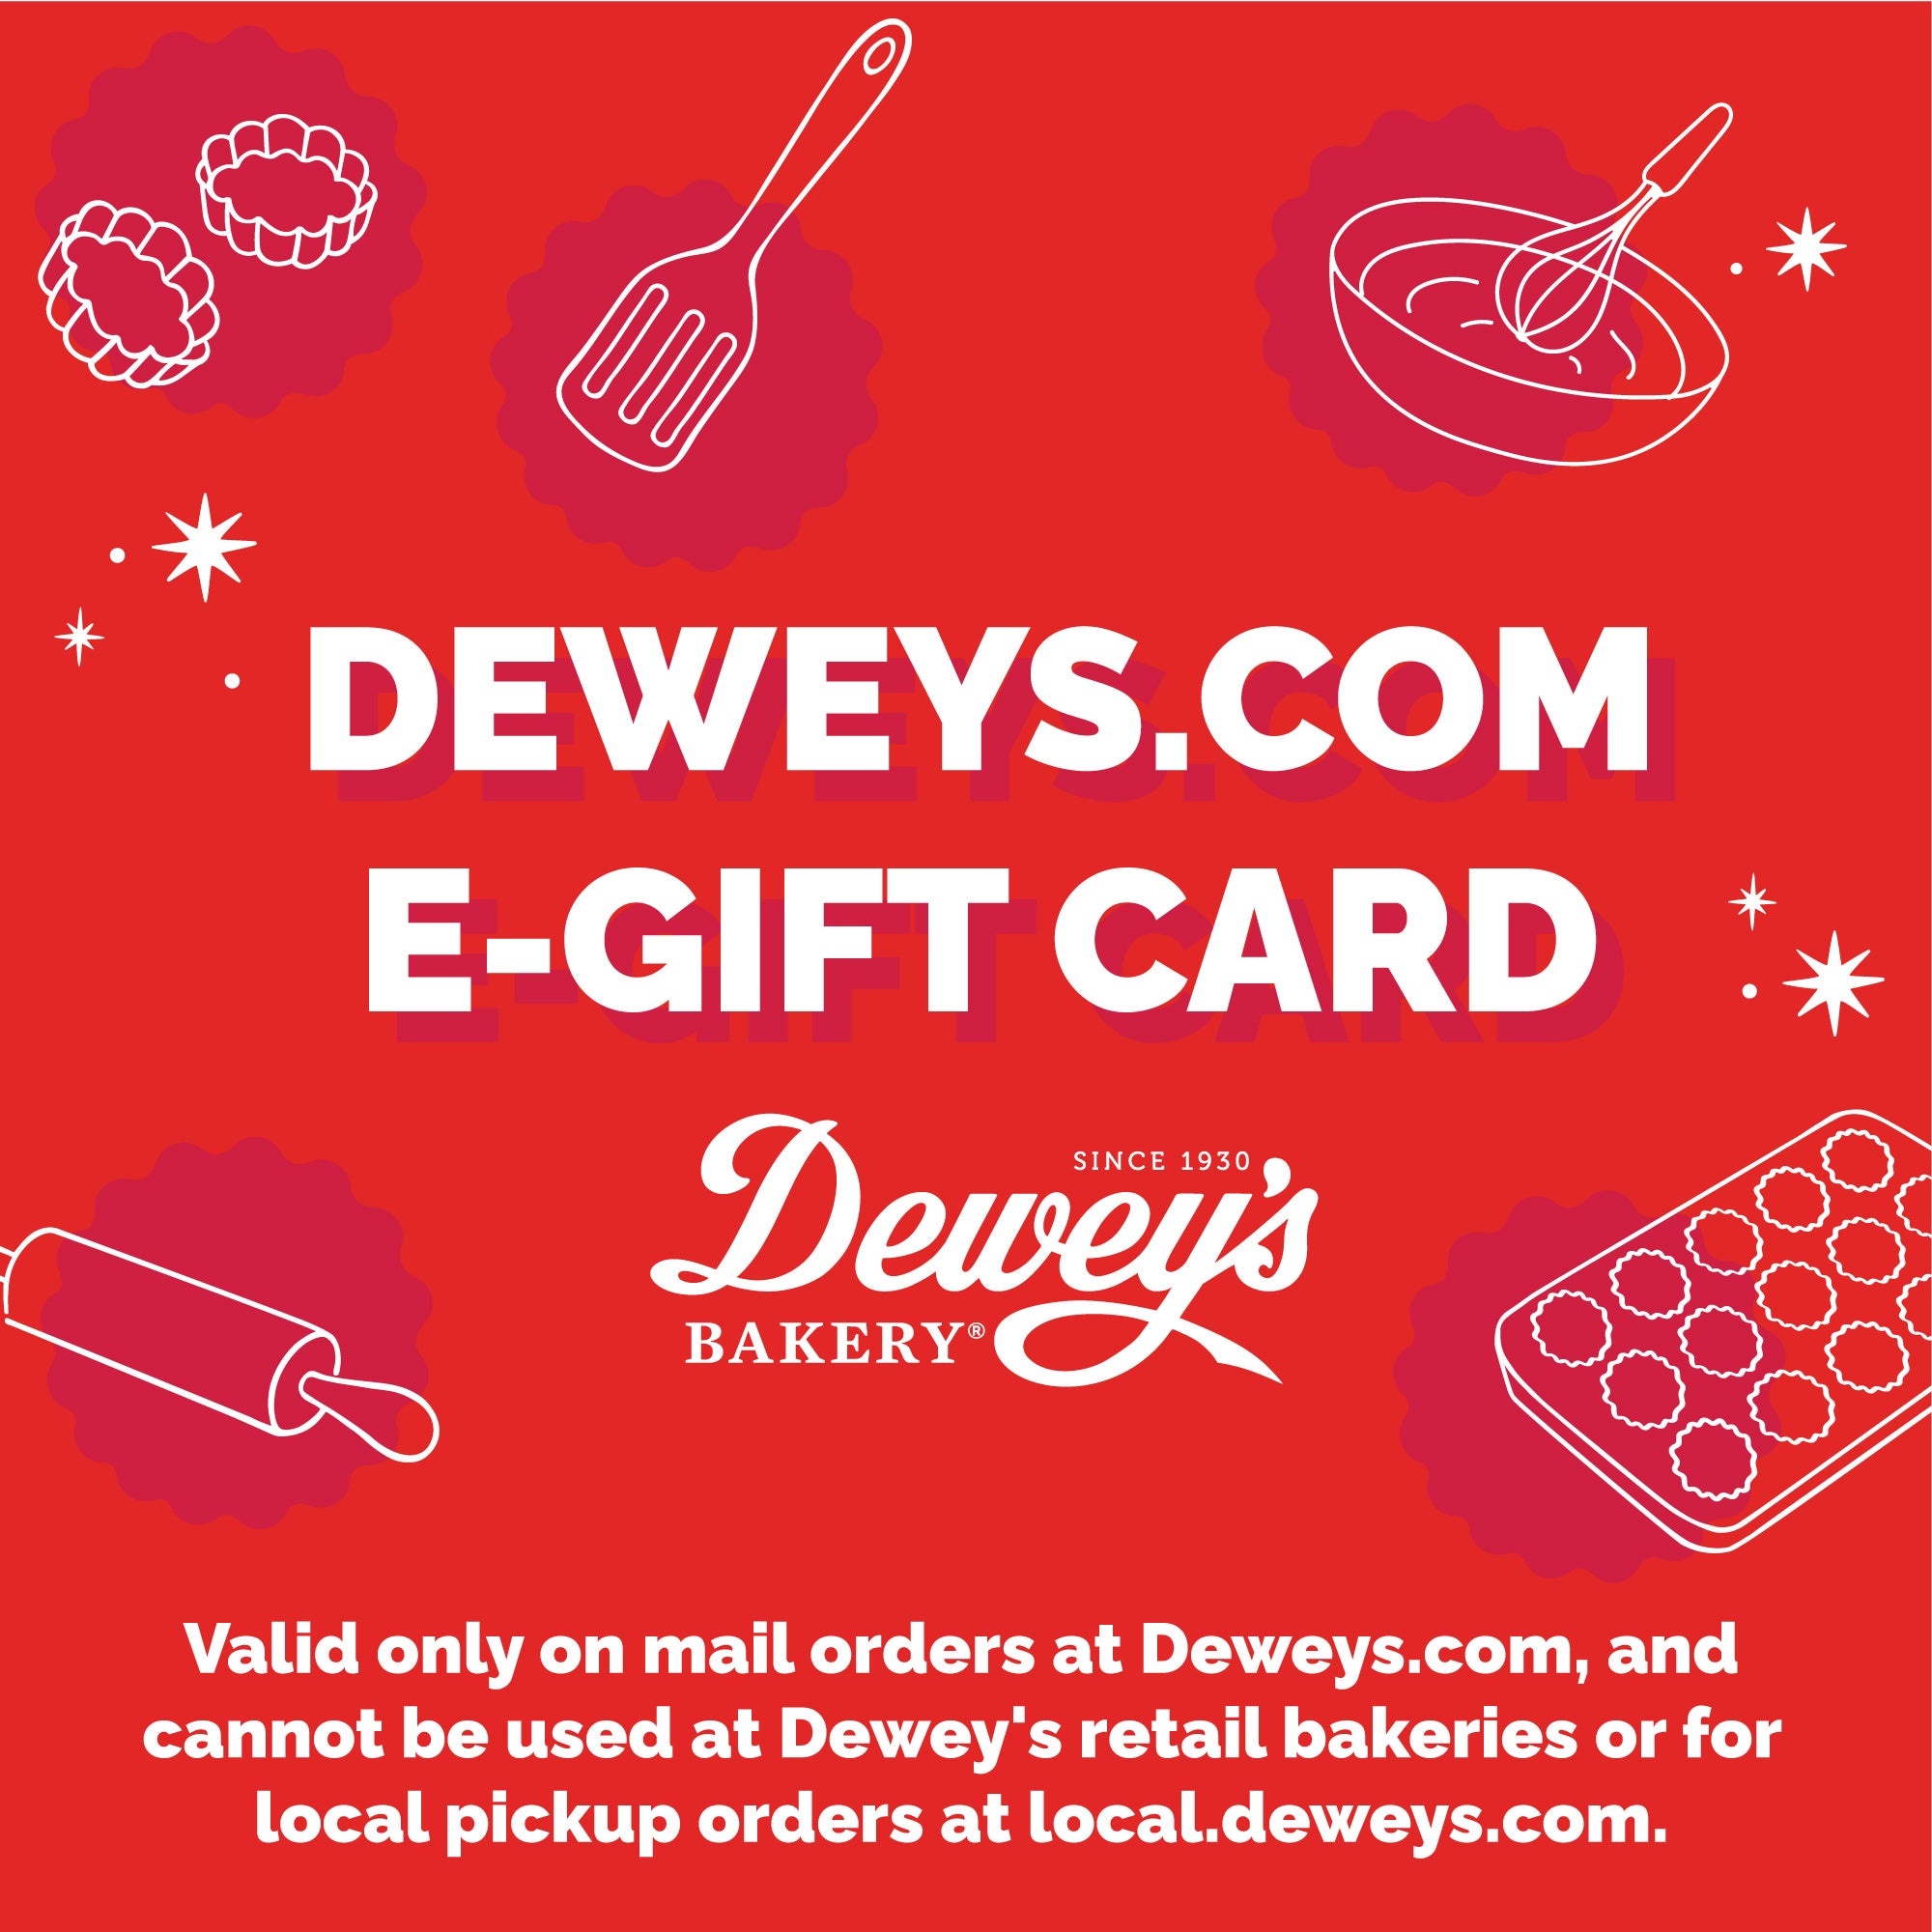 Deweys.com E-Gift Card